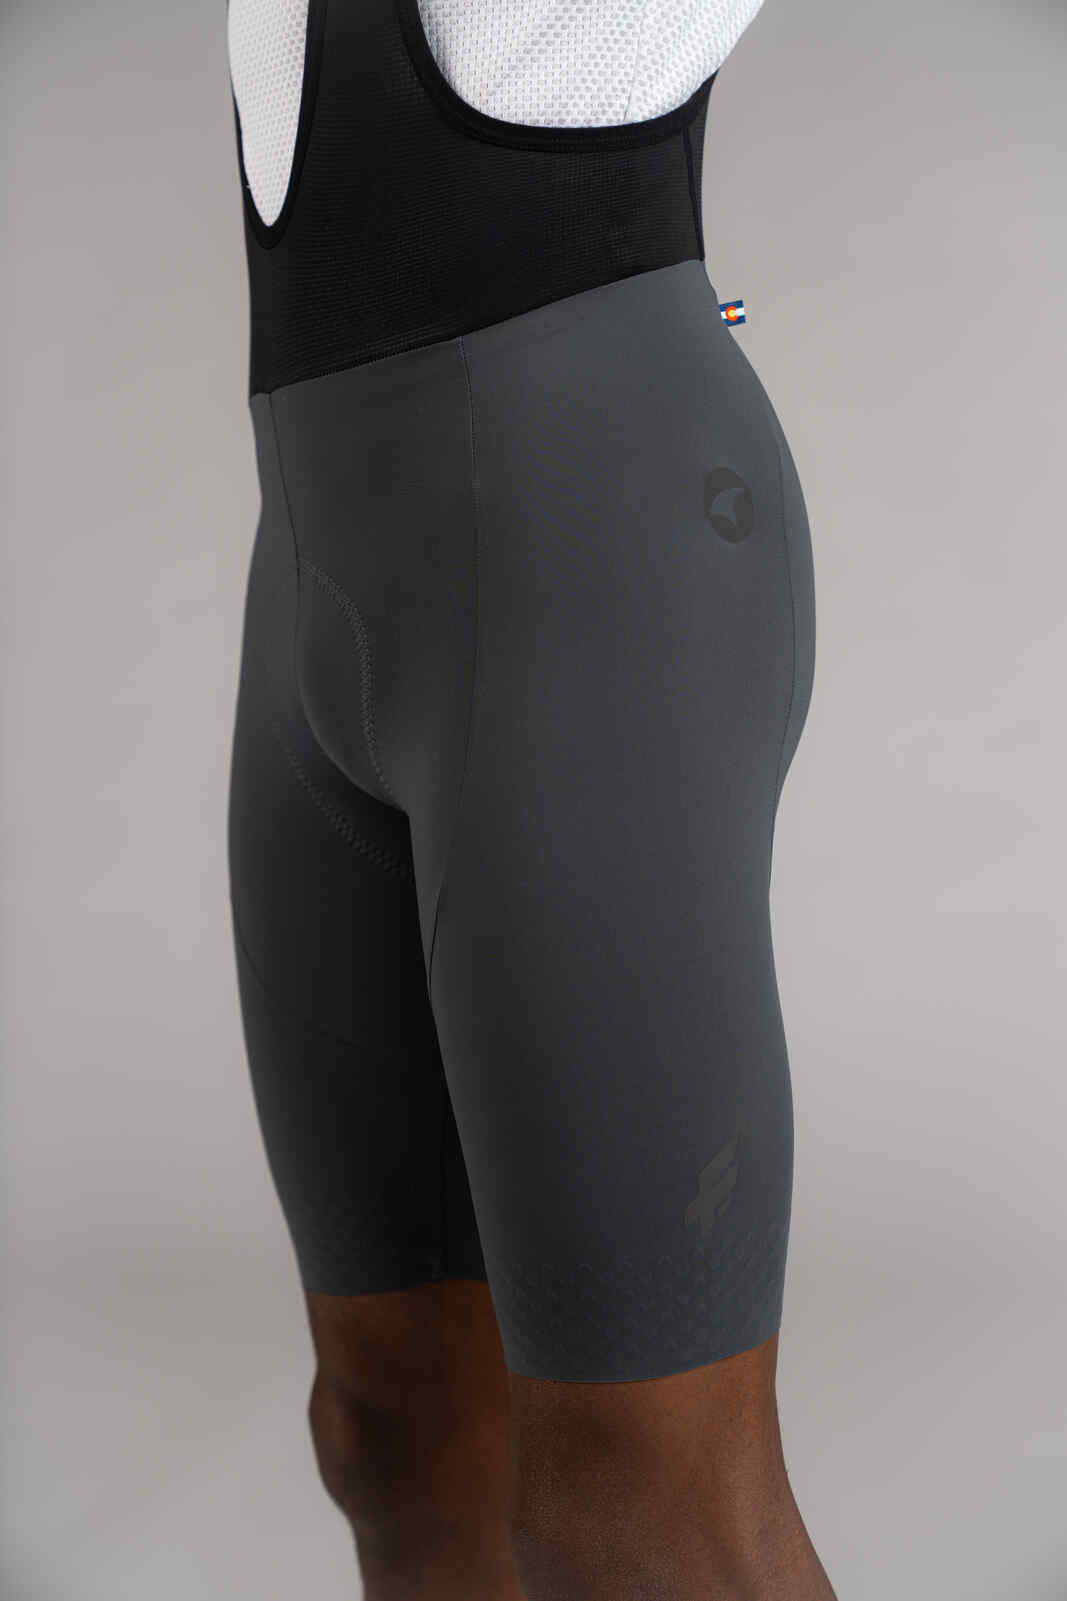 Men's Charcoal Cycling Bibs- Flyte Leg Panel Detail